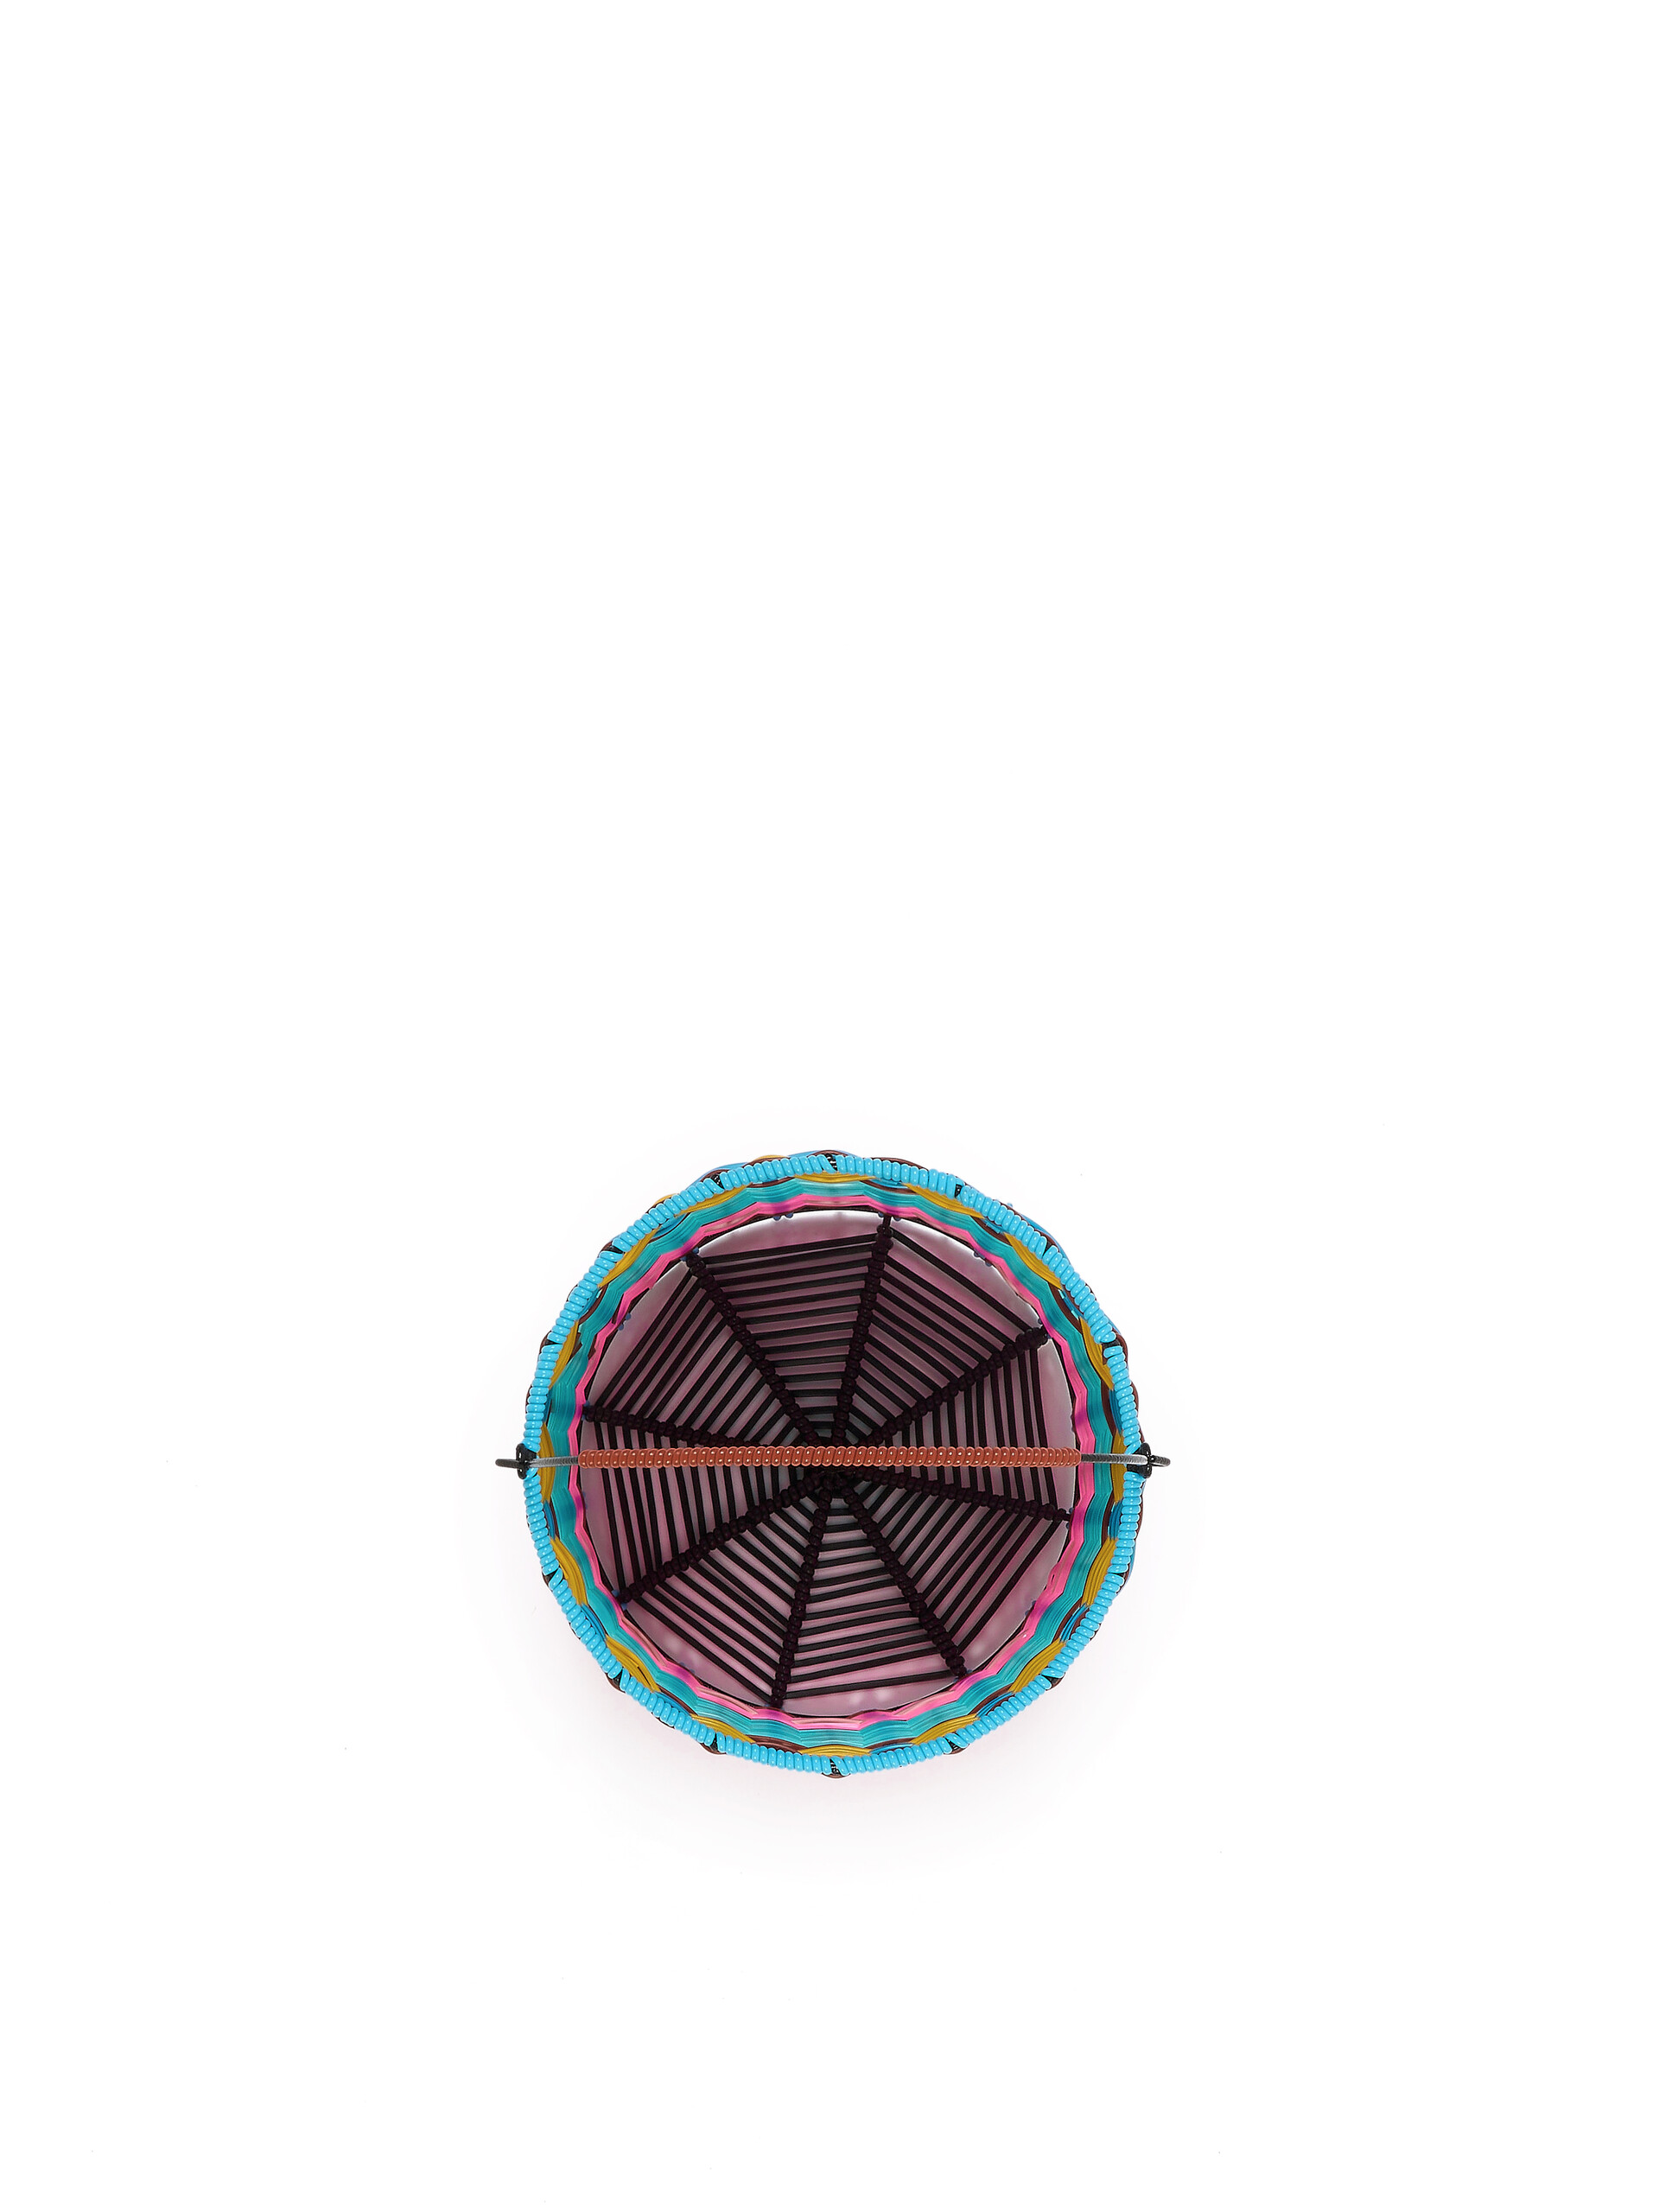 Cestino MARNI MARKET in ferro e intrecciato azzurro e rosa - Accessori - Image 4